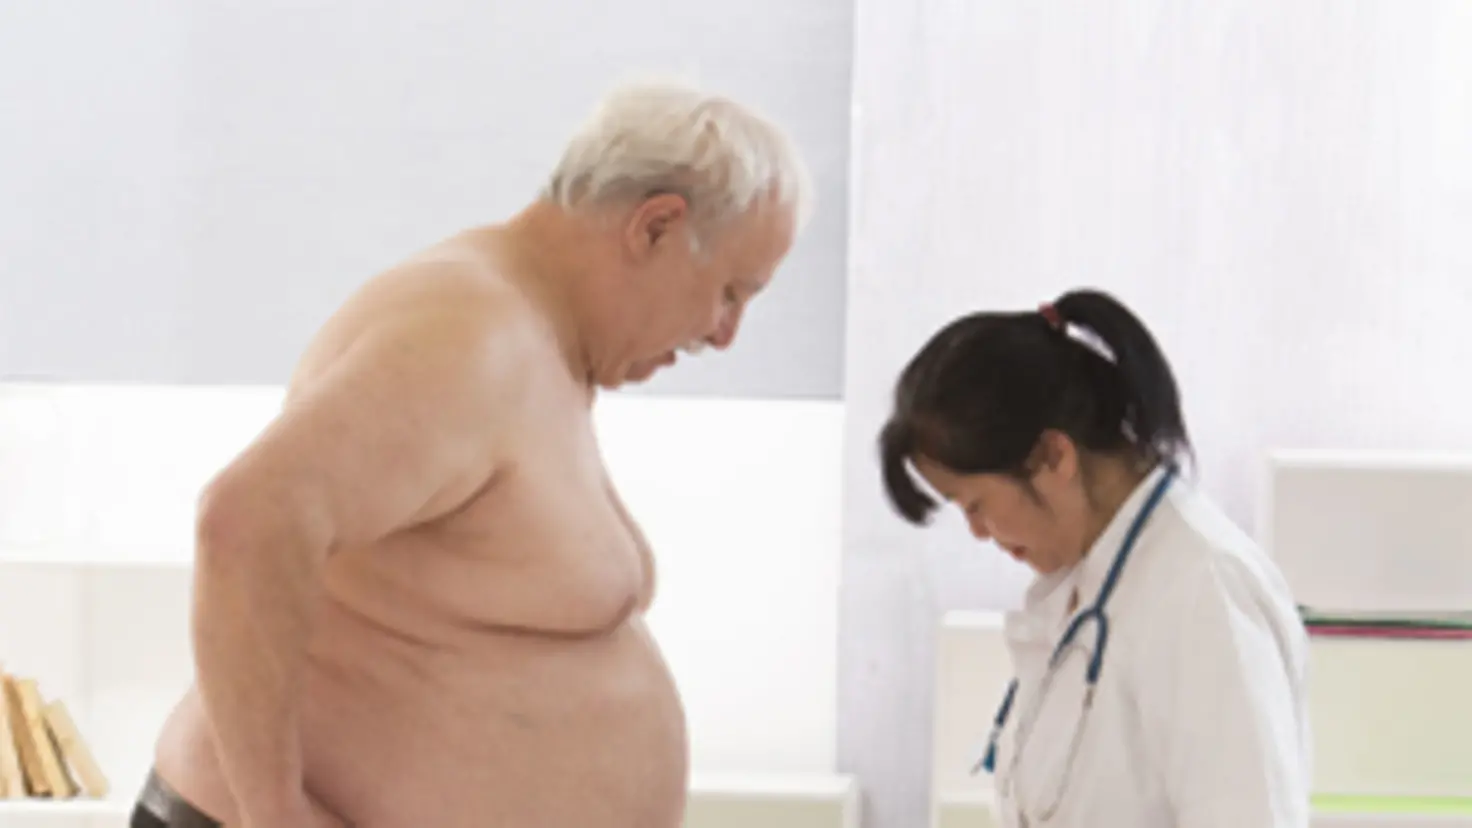 Ein übergewichtiger Mann hat einen Fuß auf einer Waage, eine Arzt-Schwester steht neben ihm und erklärt ihm etwas.